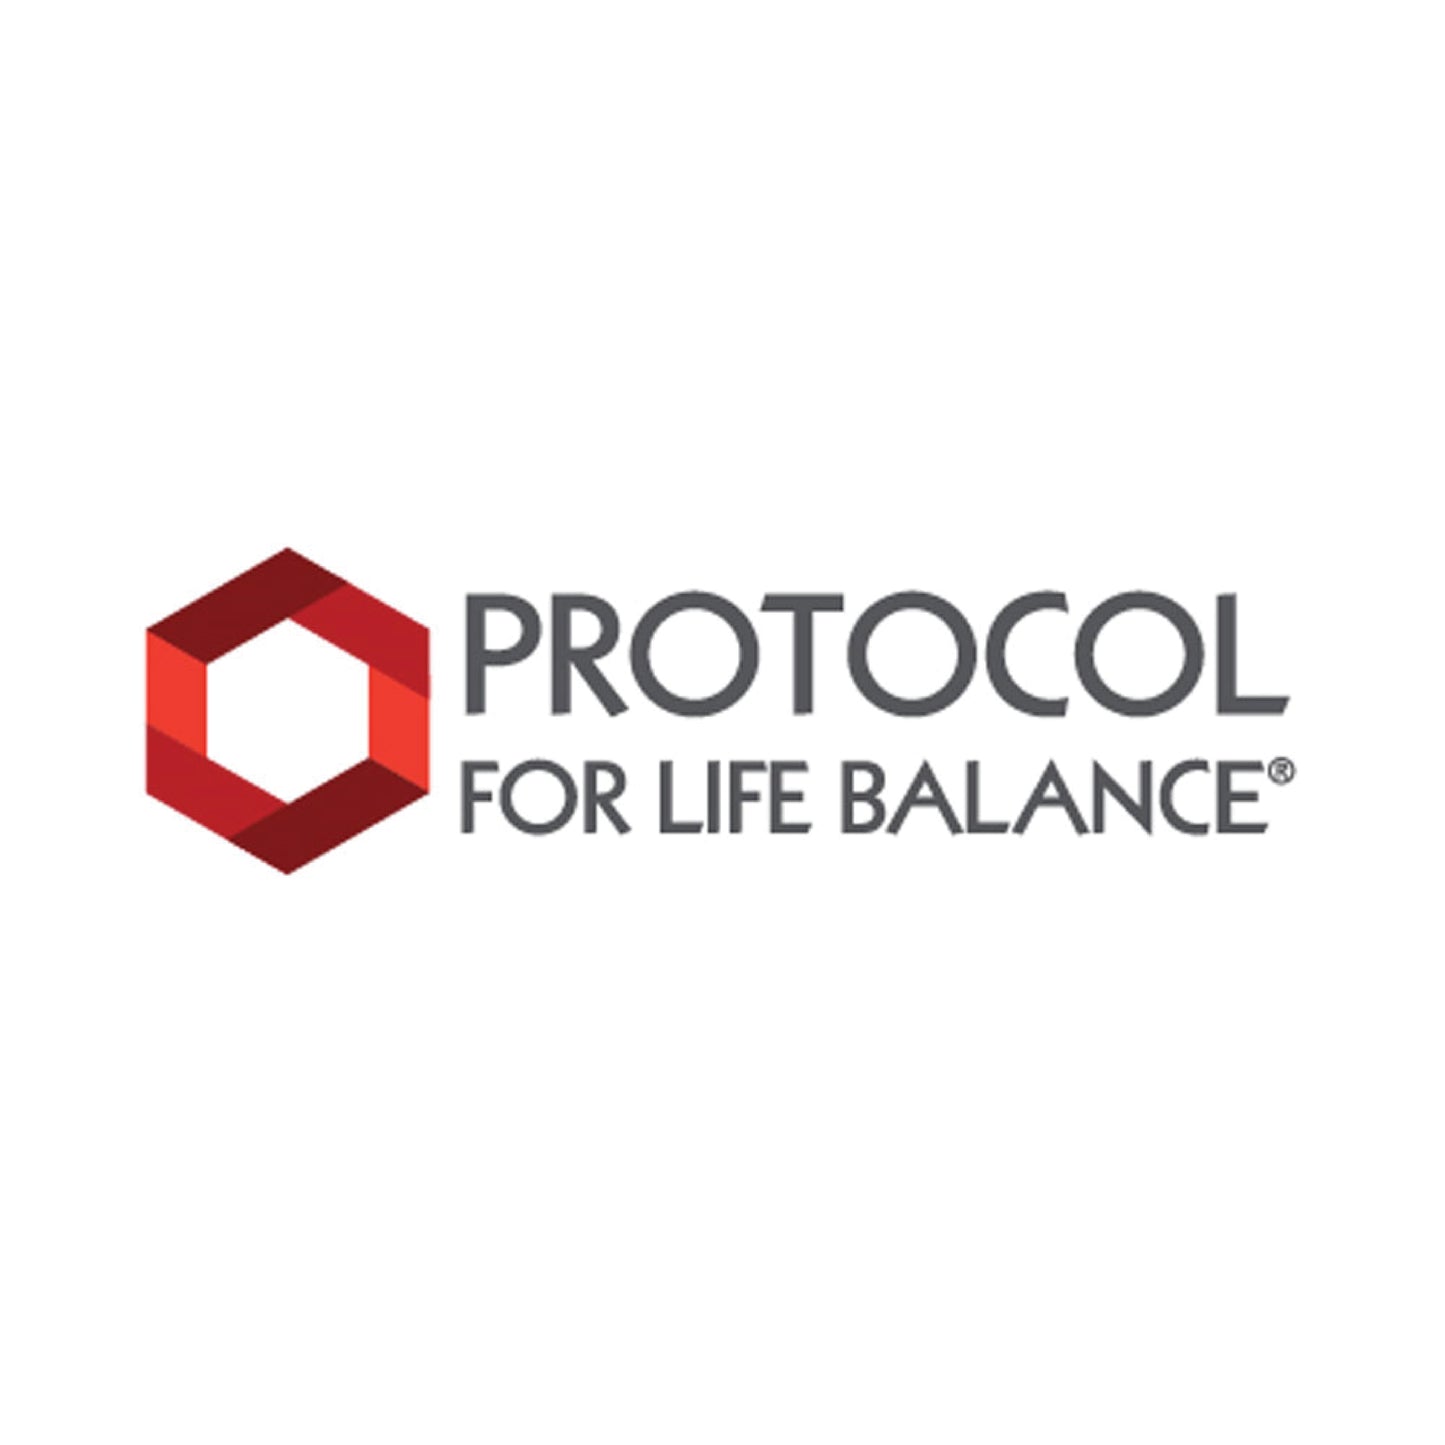 Protocol for Life Balance, Flush-Free Niacin, 500 mg, 90 Veg Capsules